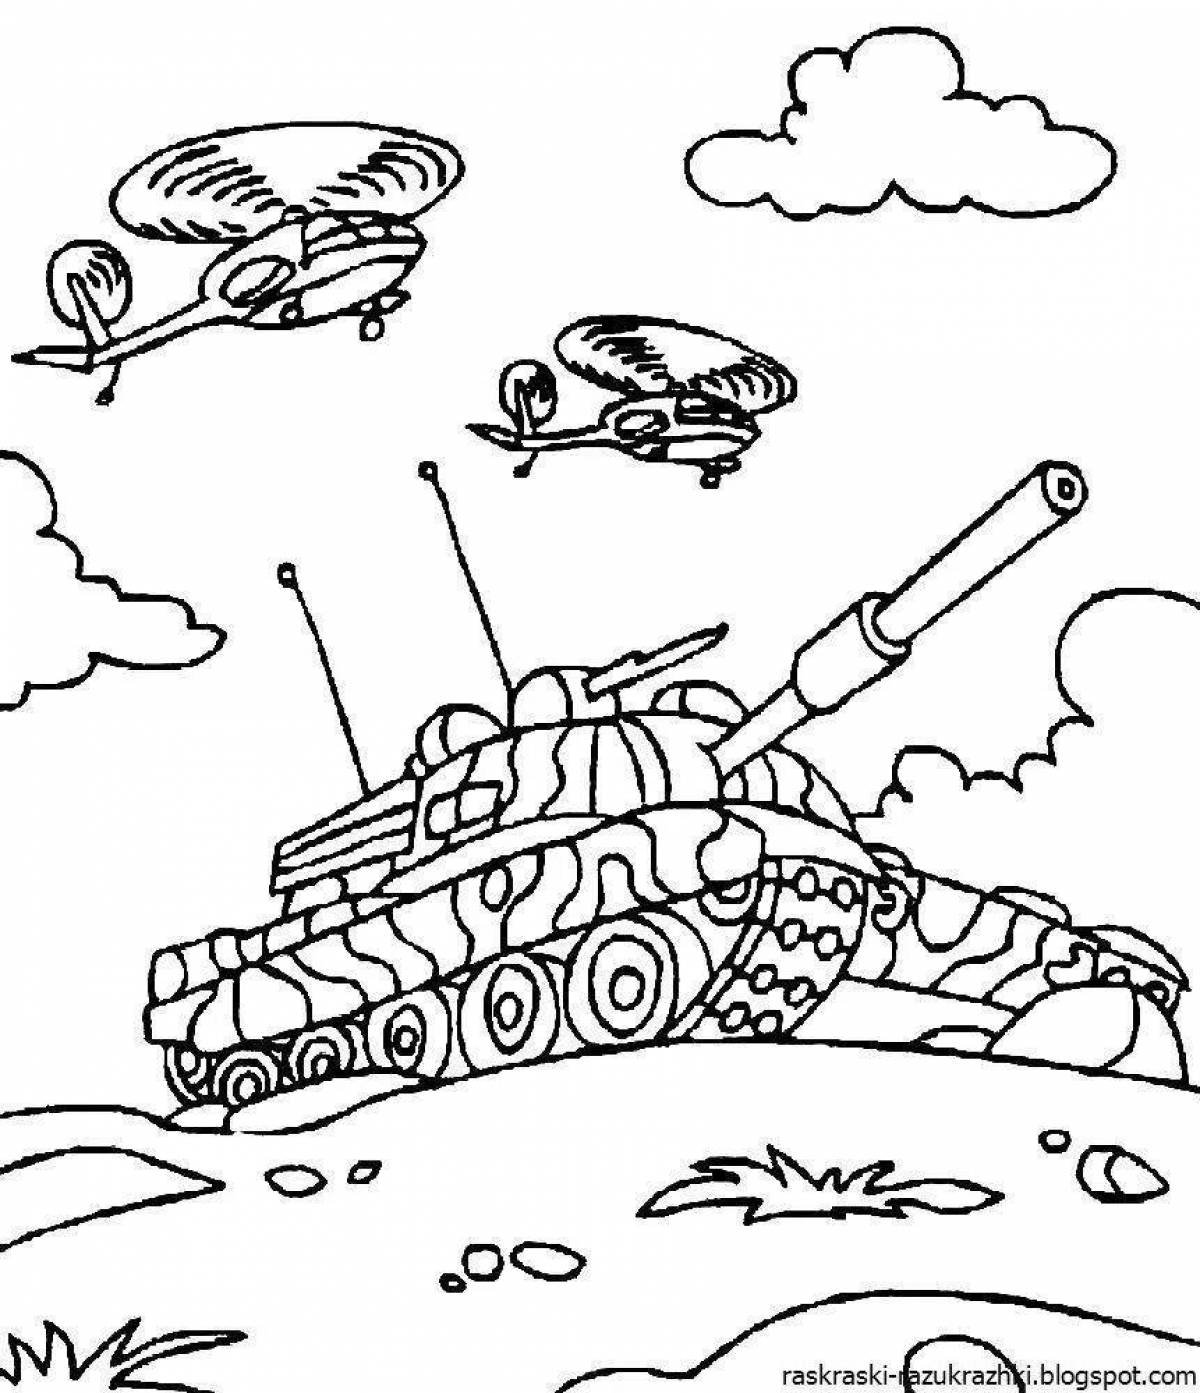 Fun coloring book afghan war for kids